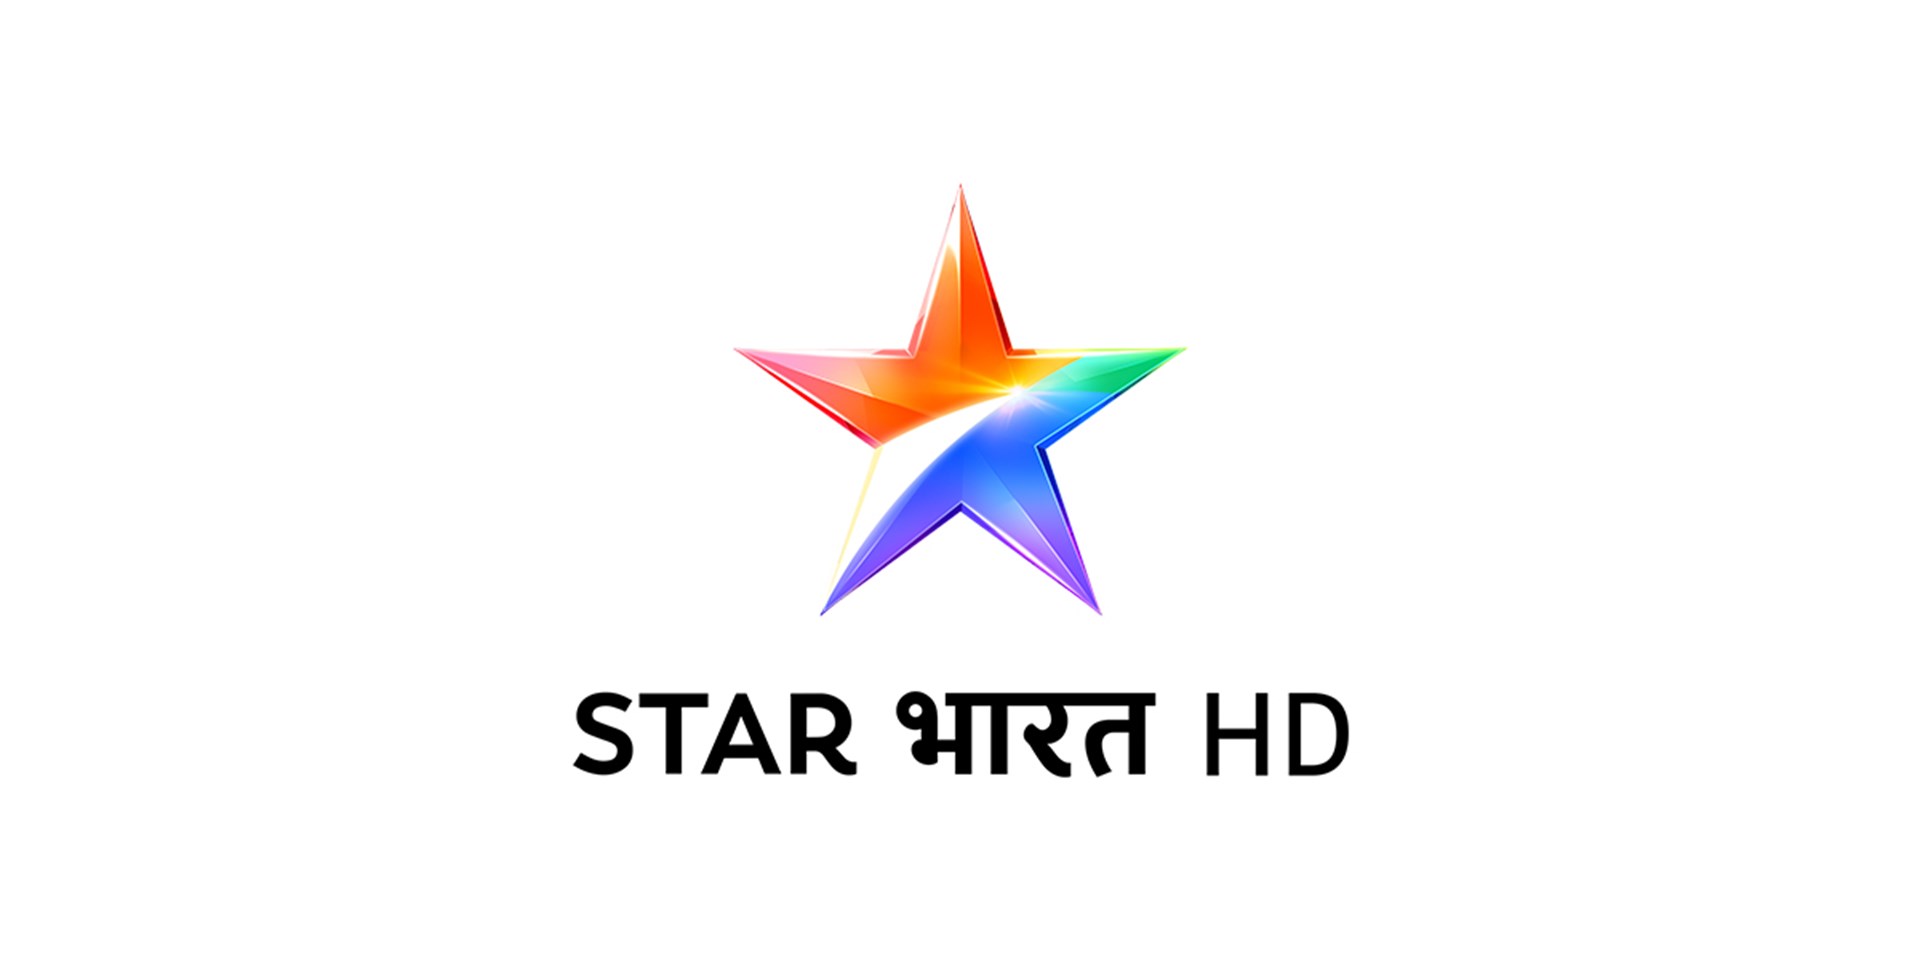 star-bharat-hd-logo.jpg